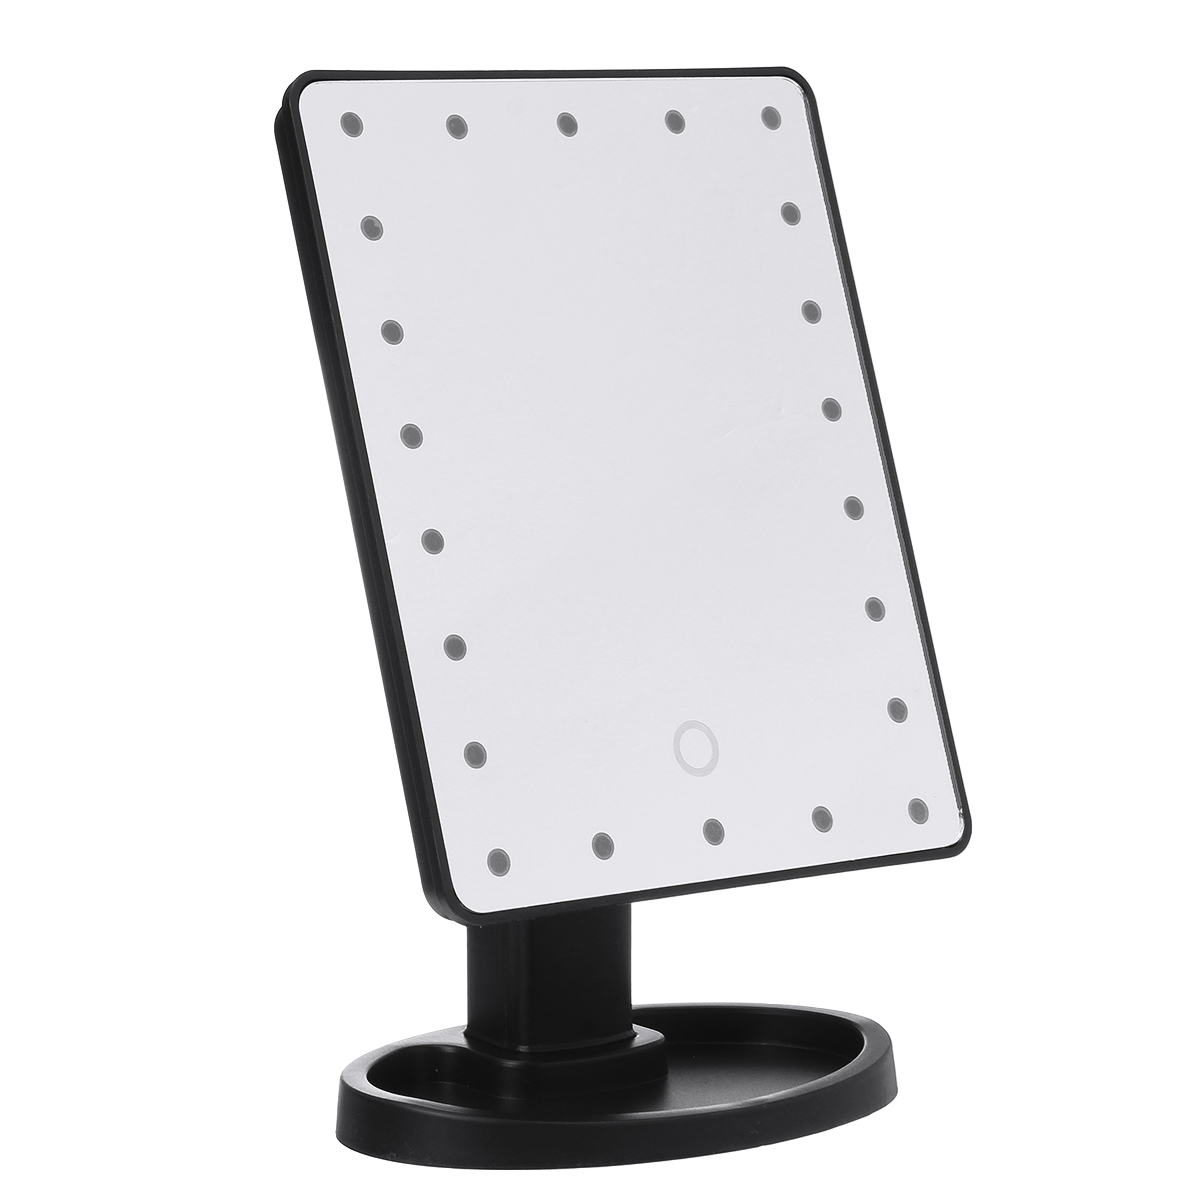 

USB 22 LED Огни Макияж Зеркало Лампа Переносной поворотный сенсорный экран Настольный светильник